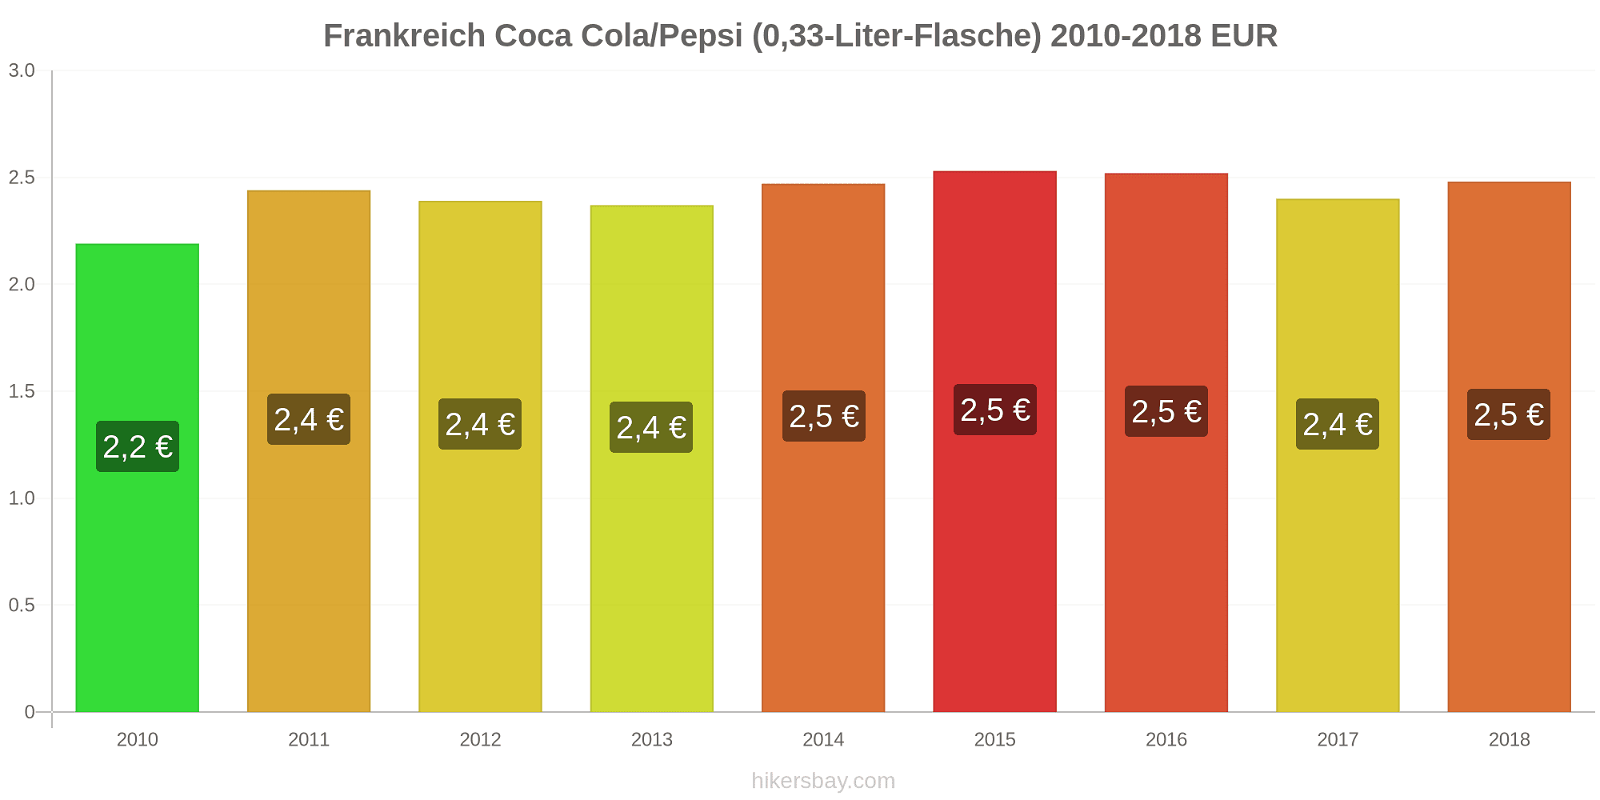 Frankreich Preisänderungen Coke/Pepsi (0,33-Liter-Flasche) hikersbay.com